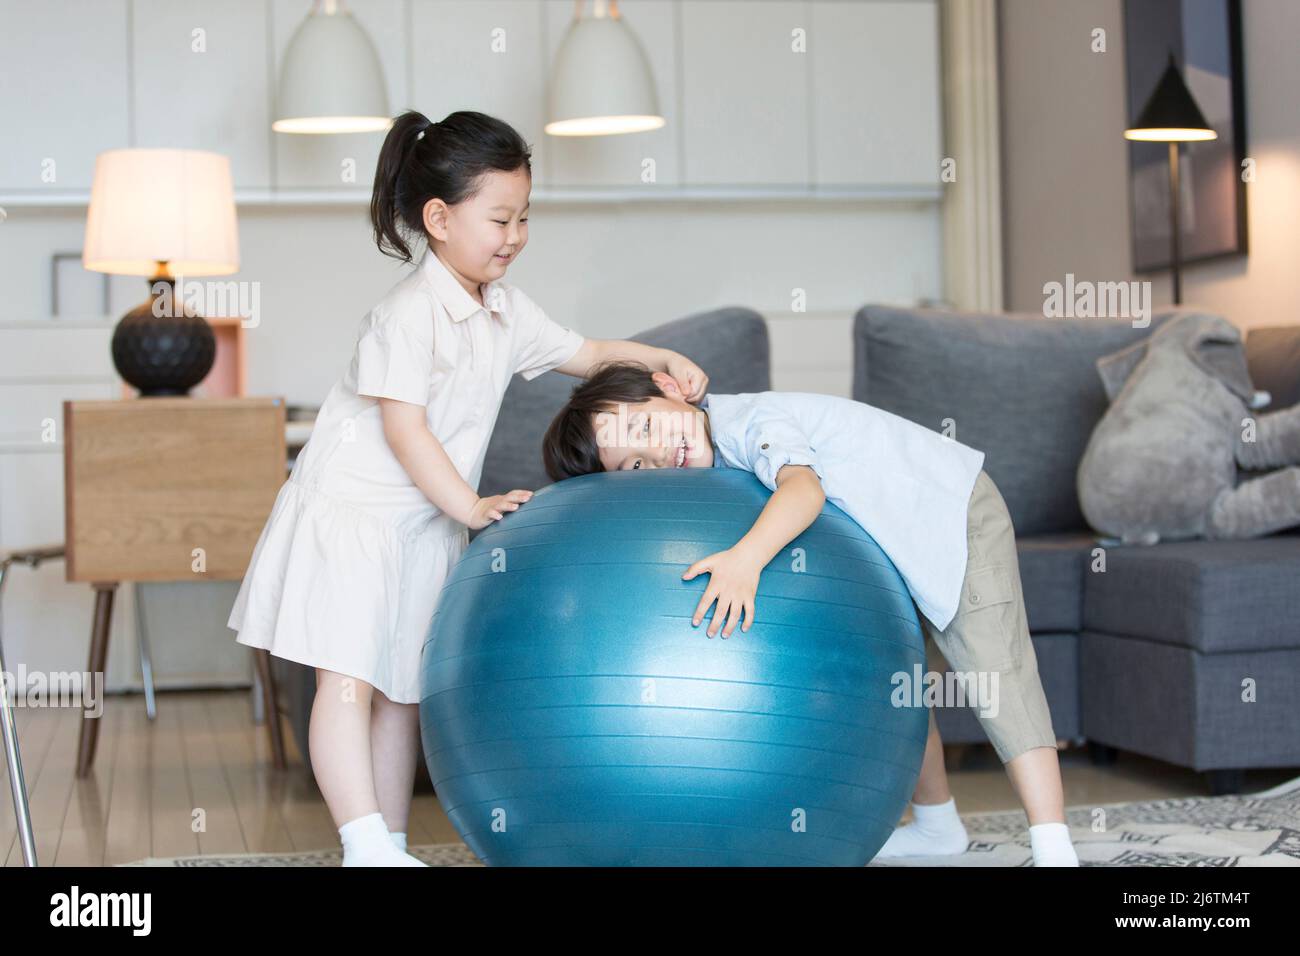 Una bambina e un ragazzino che giocano intimamente sulla palla da ginnastica nel soggiorno - foto d'archivio Foto Stock